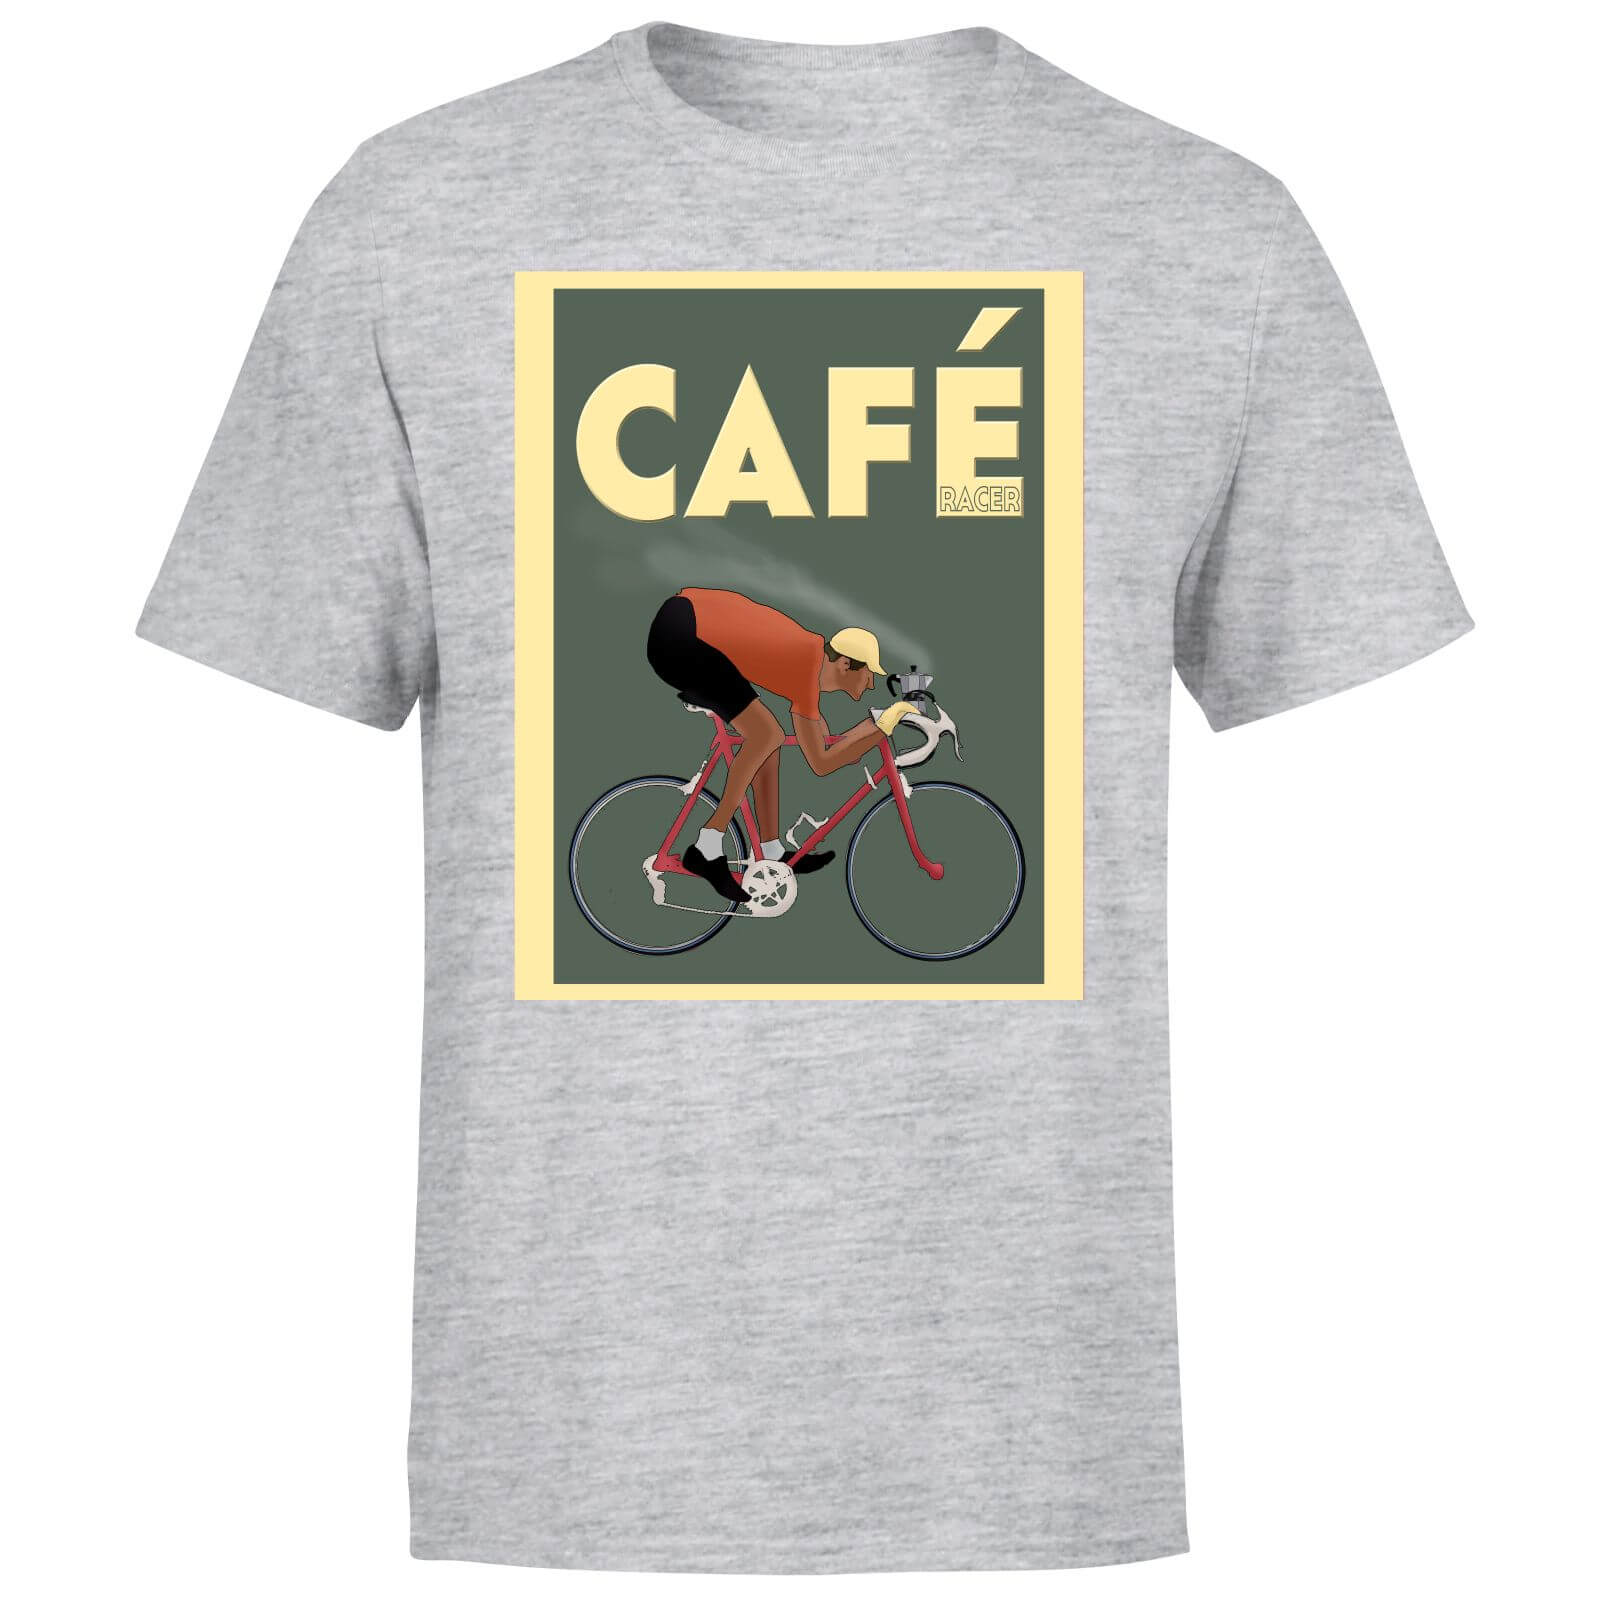 Cafe Racer Men's T-Shirt - Grey - XS - Grey